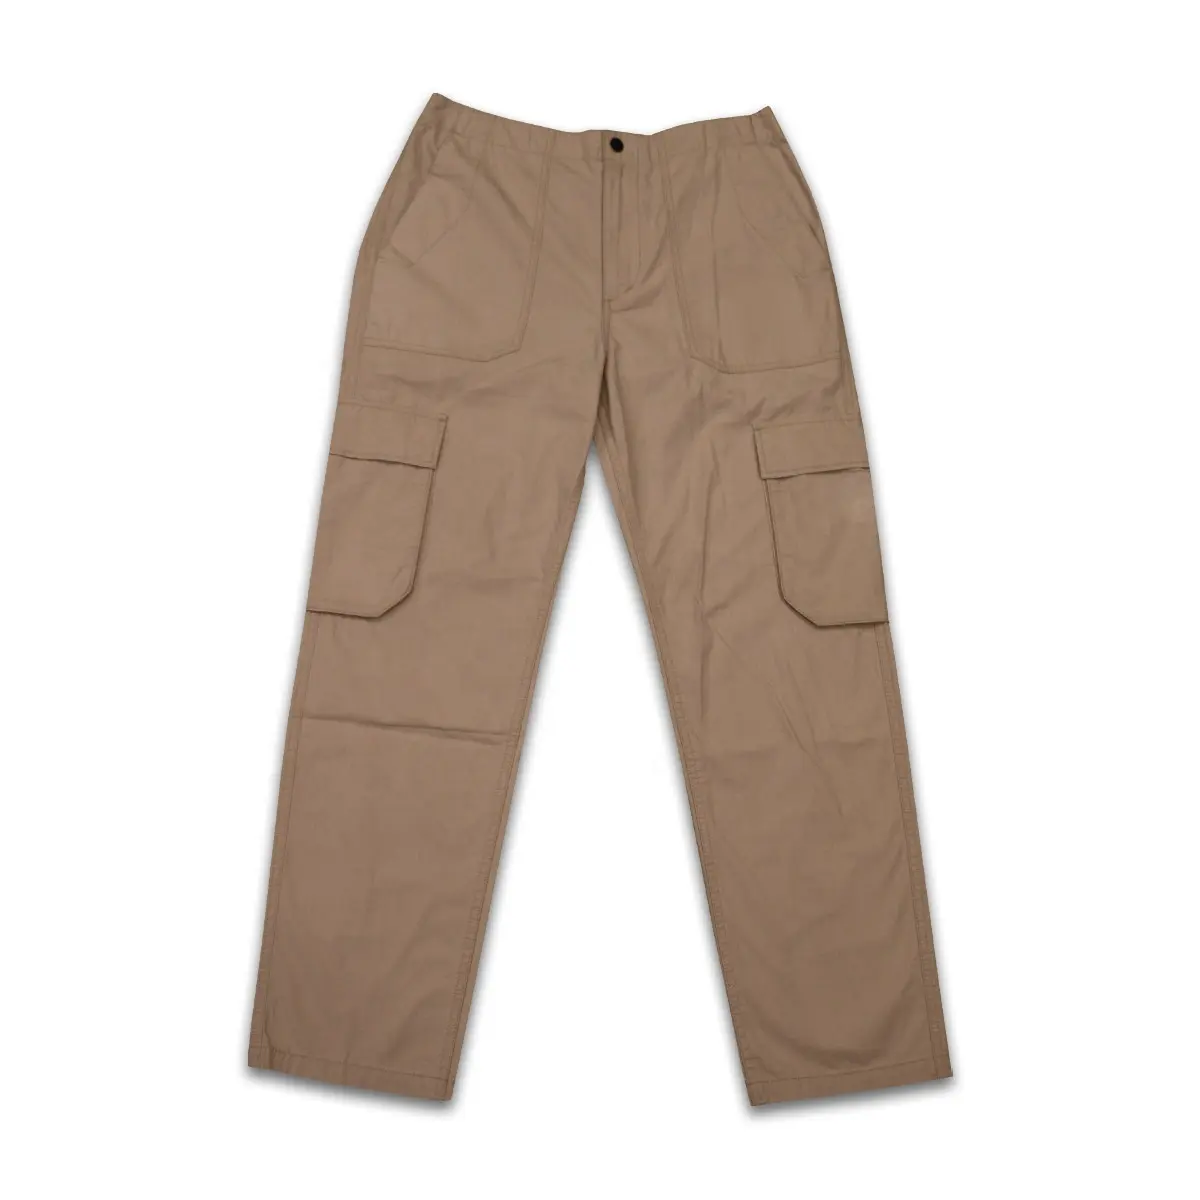 Хит продаж, дешевые модные мужские брюки-карго из 100% хлопка с застежкой-молнией, с карманами для мужчин